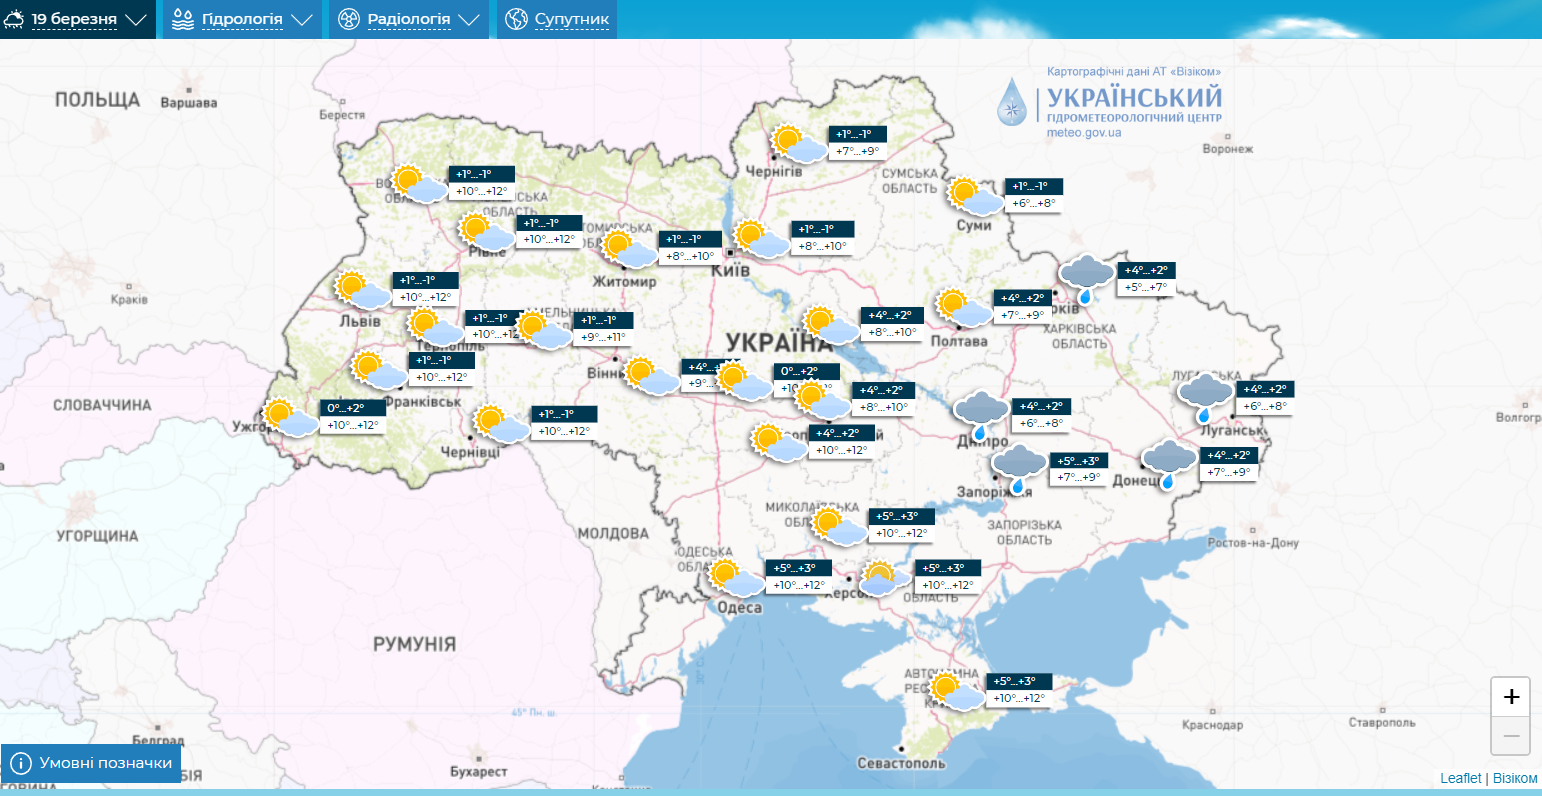 Уже совсем скоро роскошные 19: синоптики рассказали, когда в Украину придет потепление. Карта